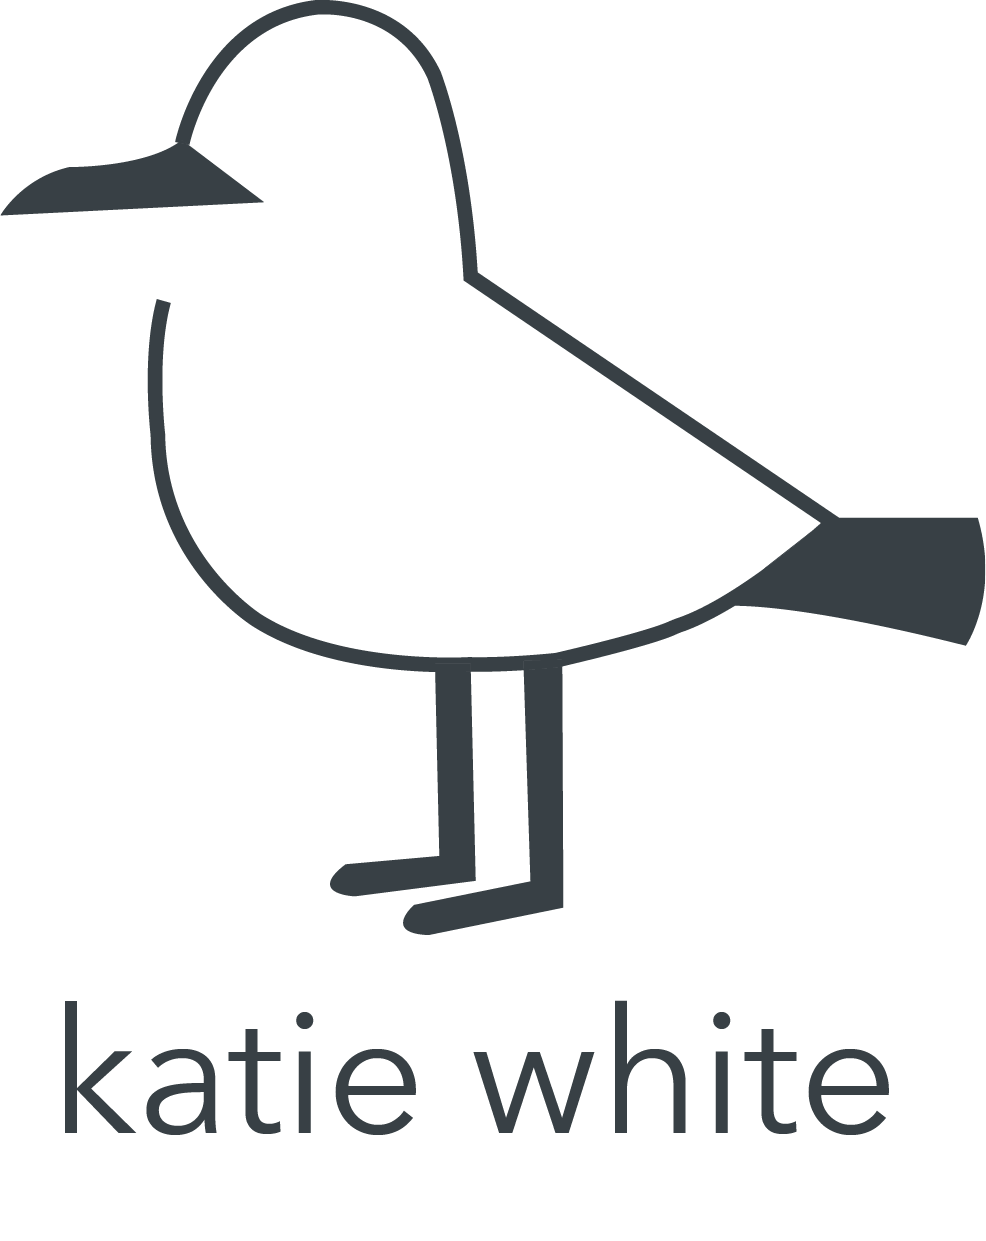 Katie White